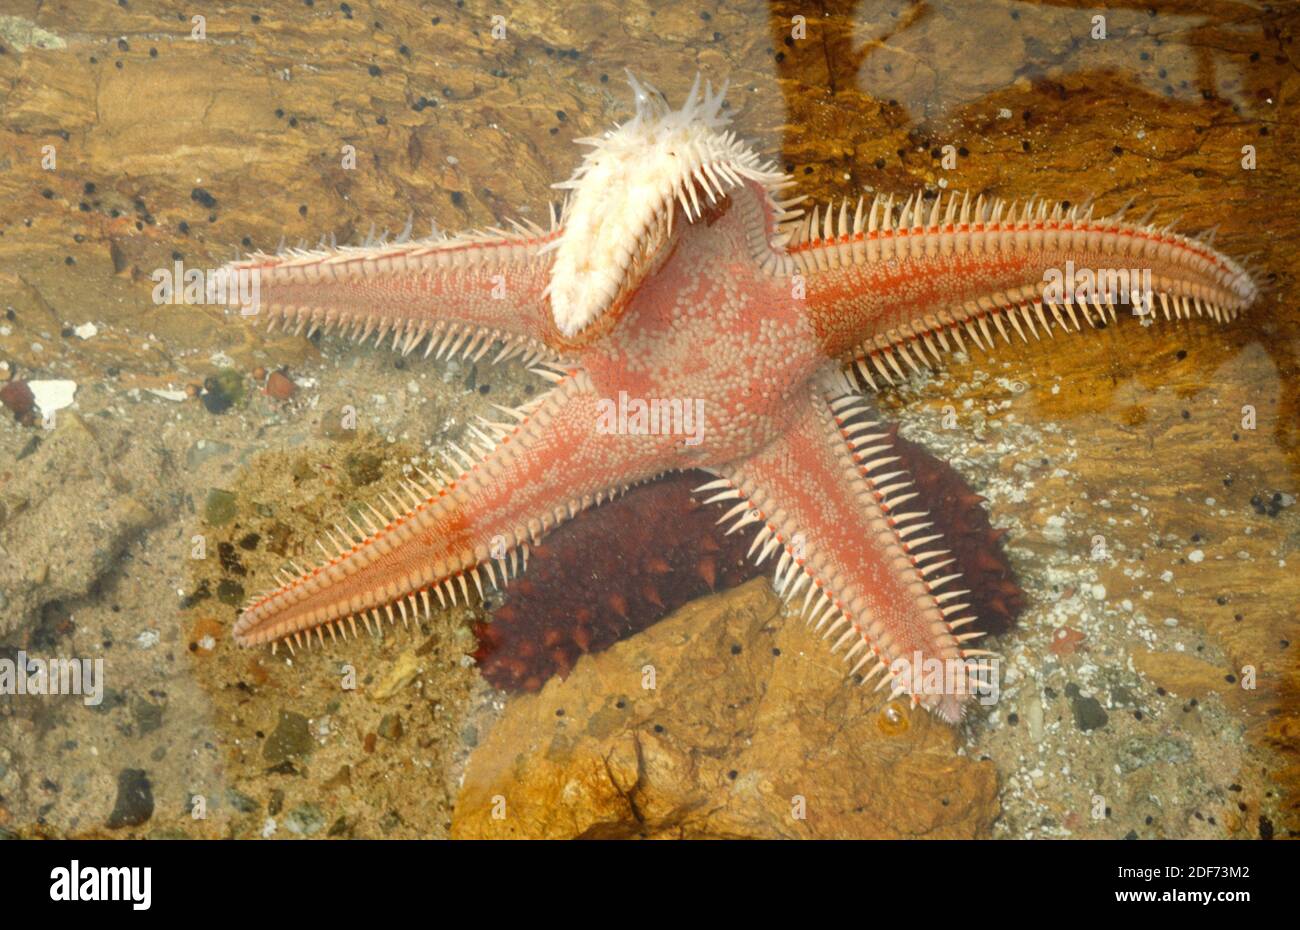 La stella rossa del pettine (Astropecten aranciacus) è una stella marina originaria del Mar Mediterraneo e dell'Atlantico orientale. Capovolgere il campione. Questa foto è stata scattata in Foto Stock